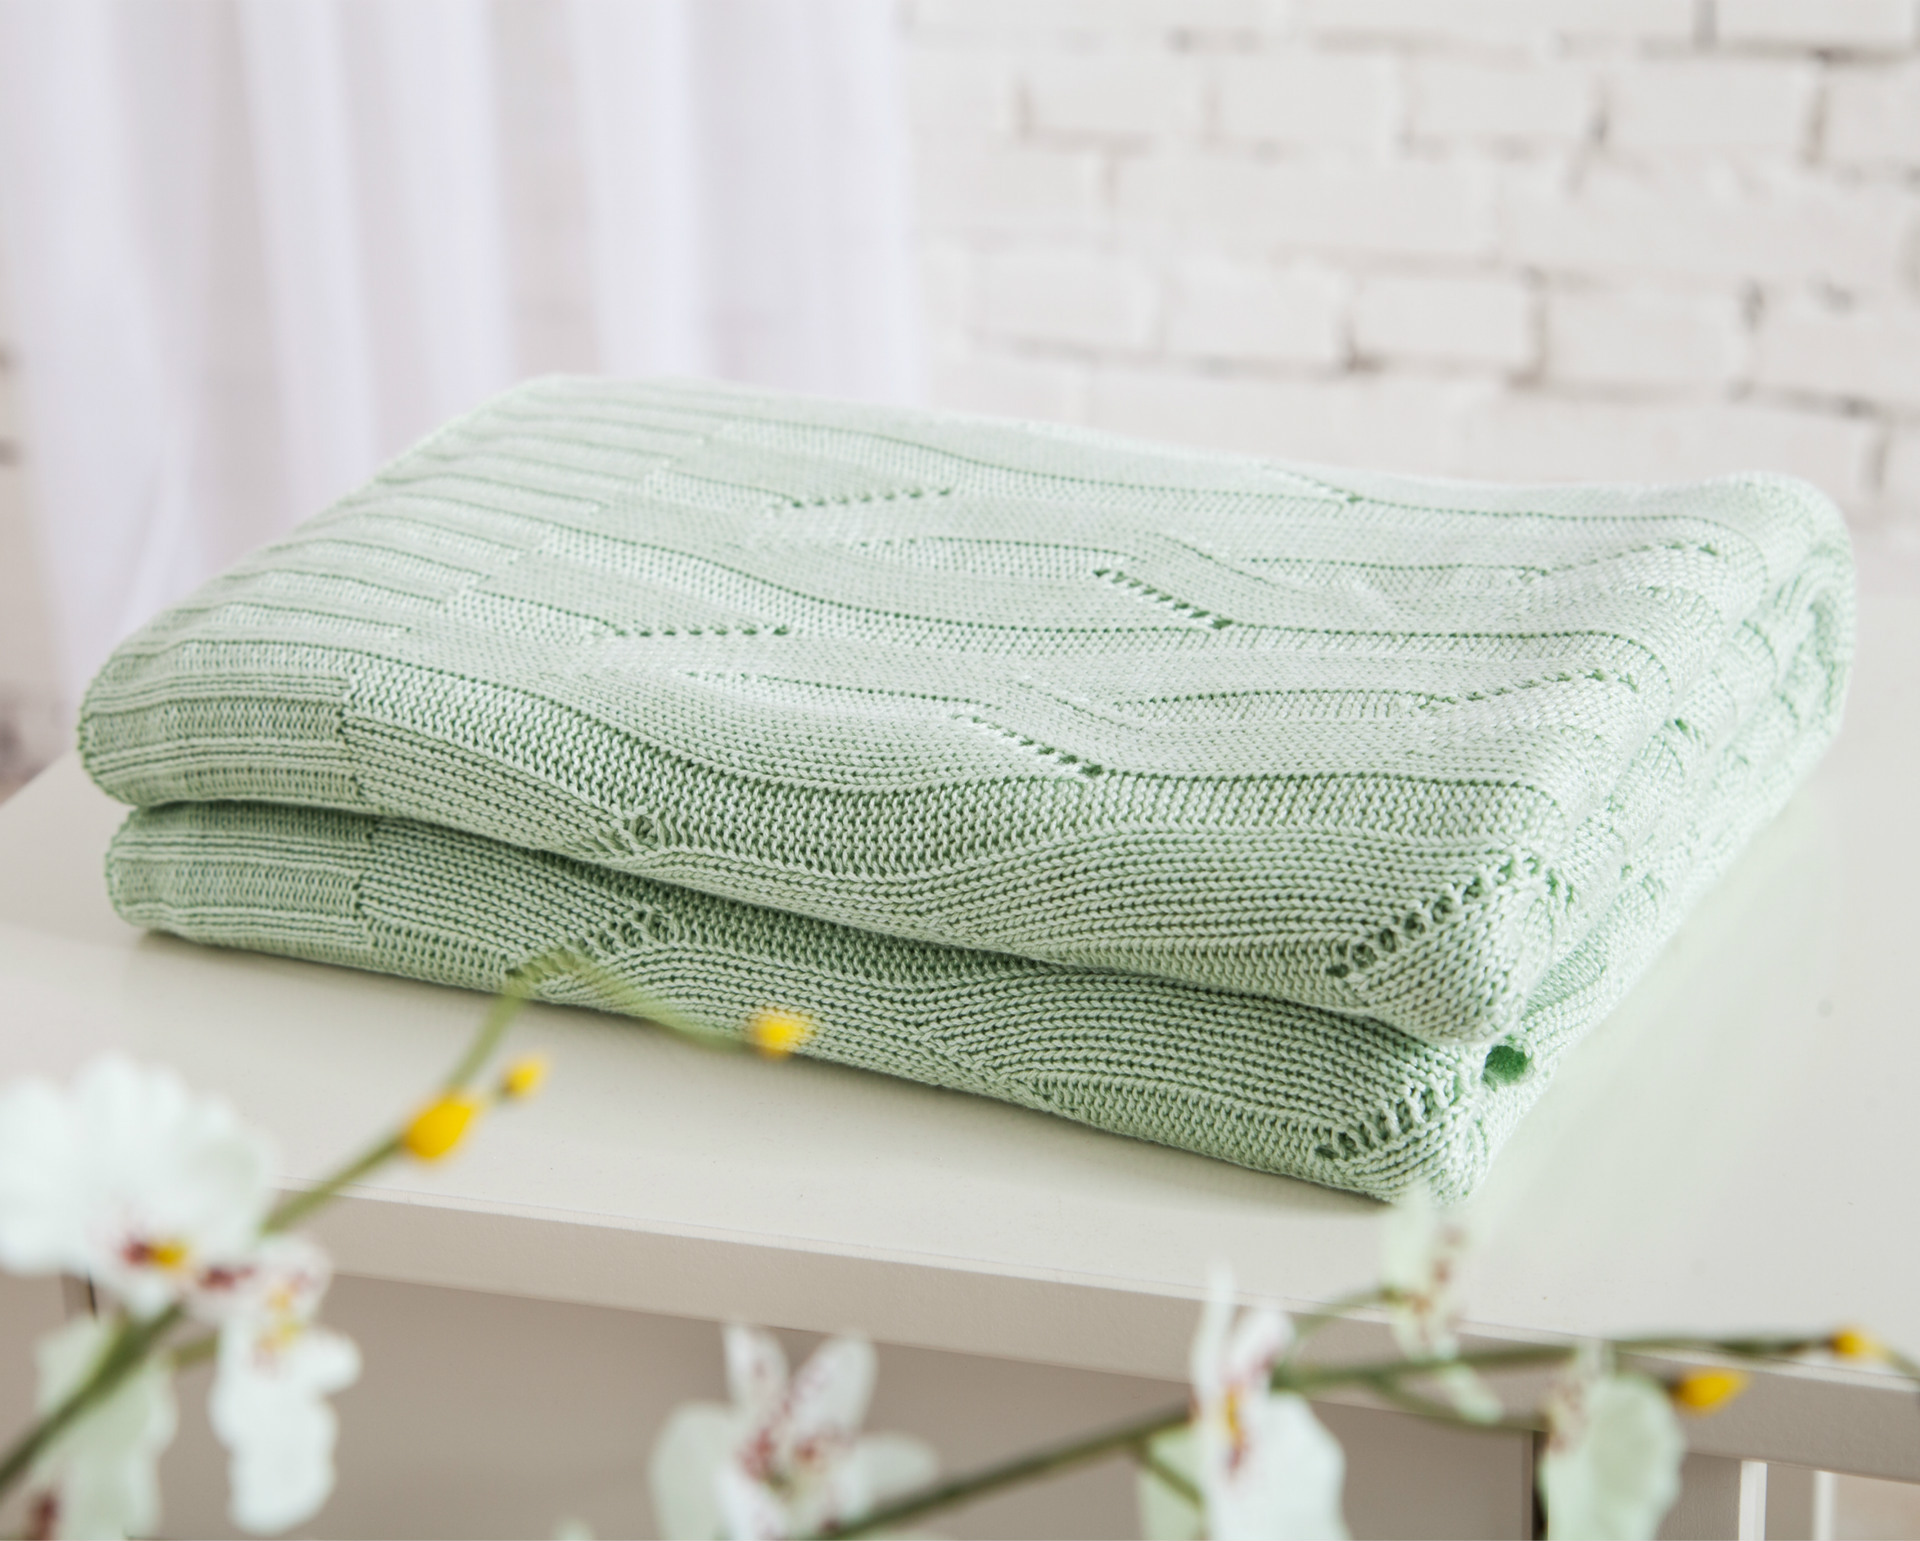 100%竹纖維針織線毯沙發蓋毯絲綢般觸感抗菌夏季優選夏被線毯